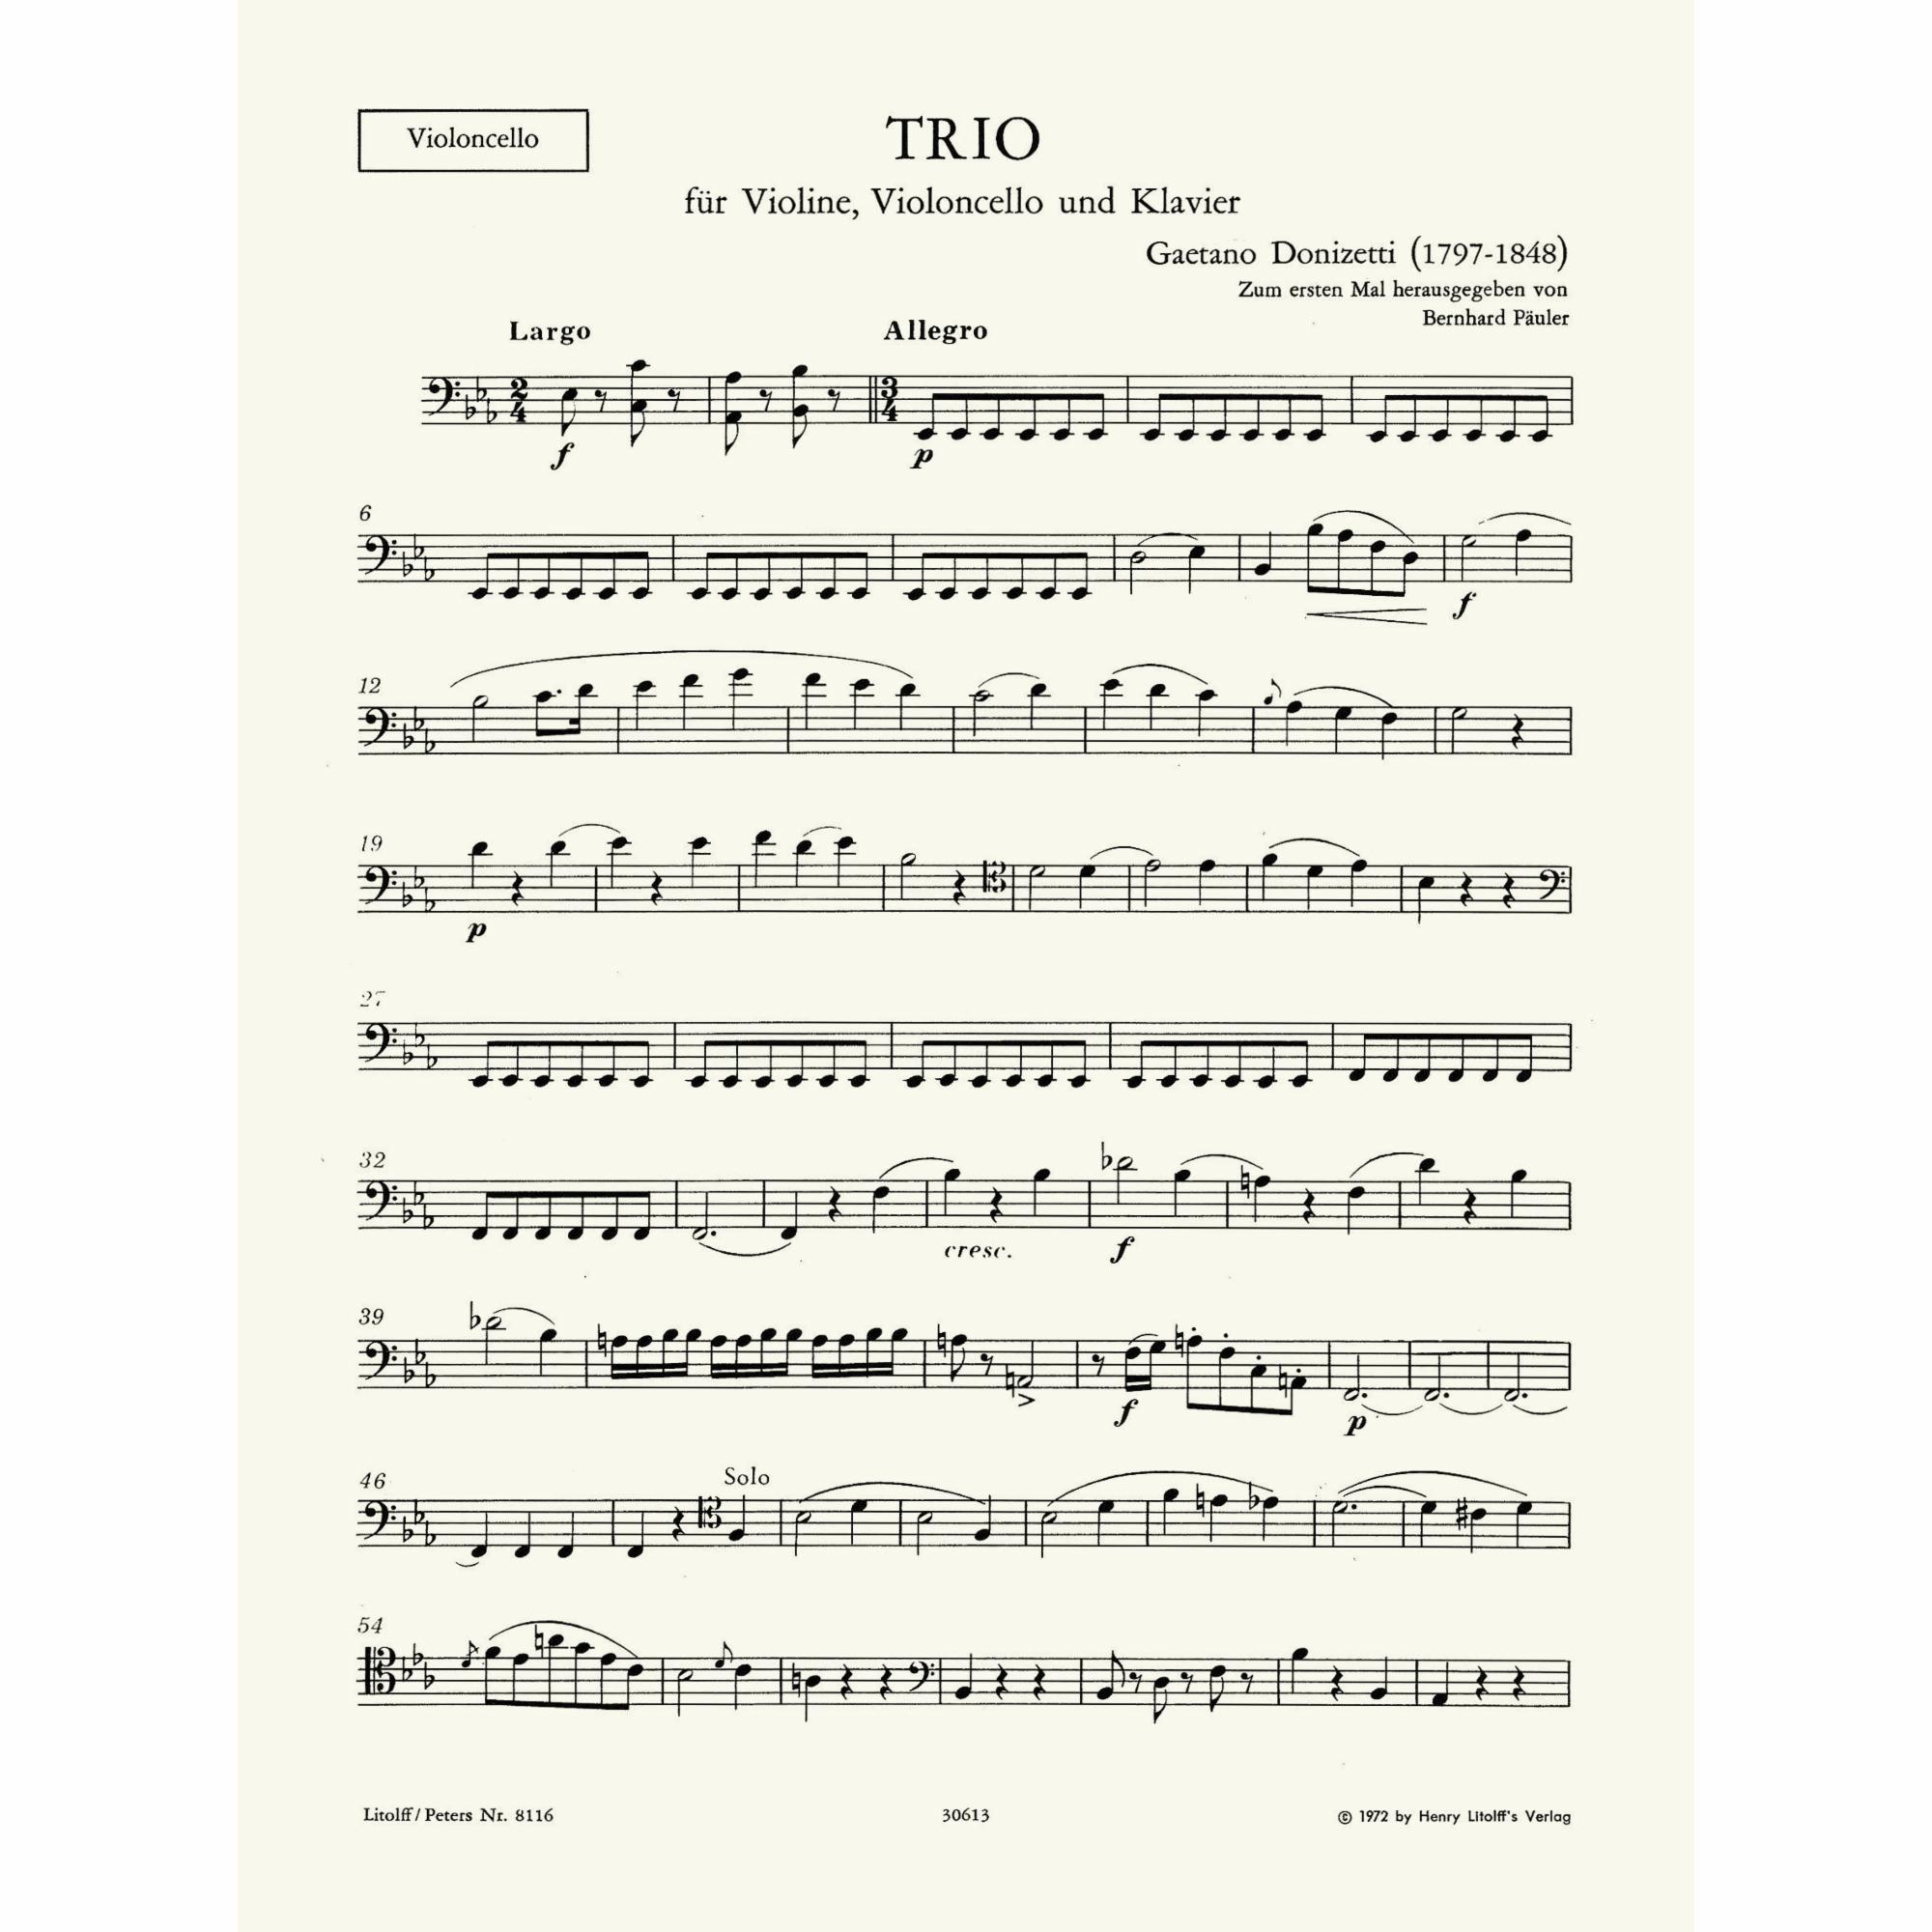 Sample: Cello (Pg. 3)